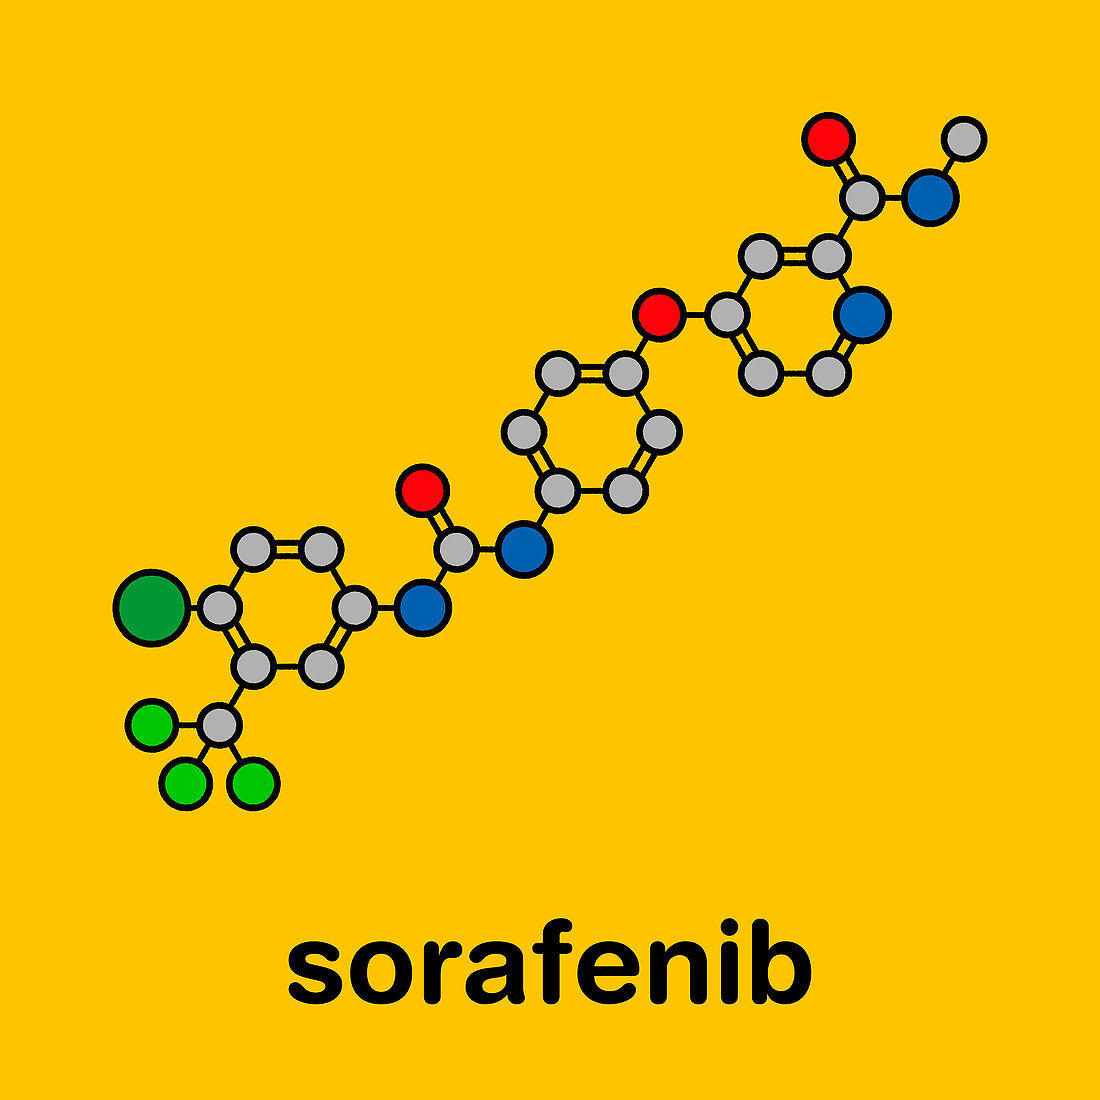 Sorafenib cancer drug, molecular model